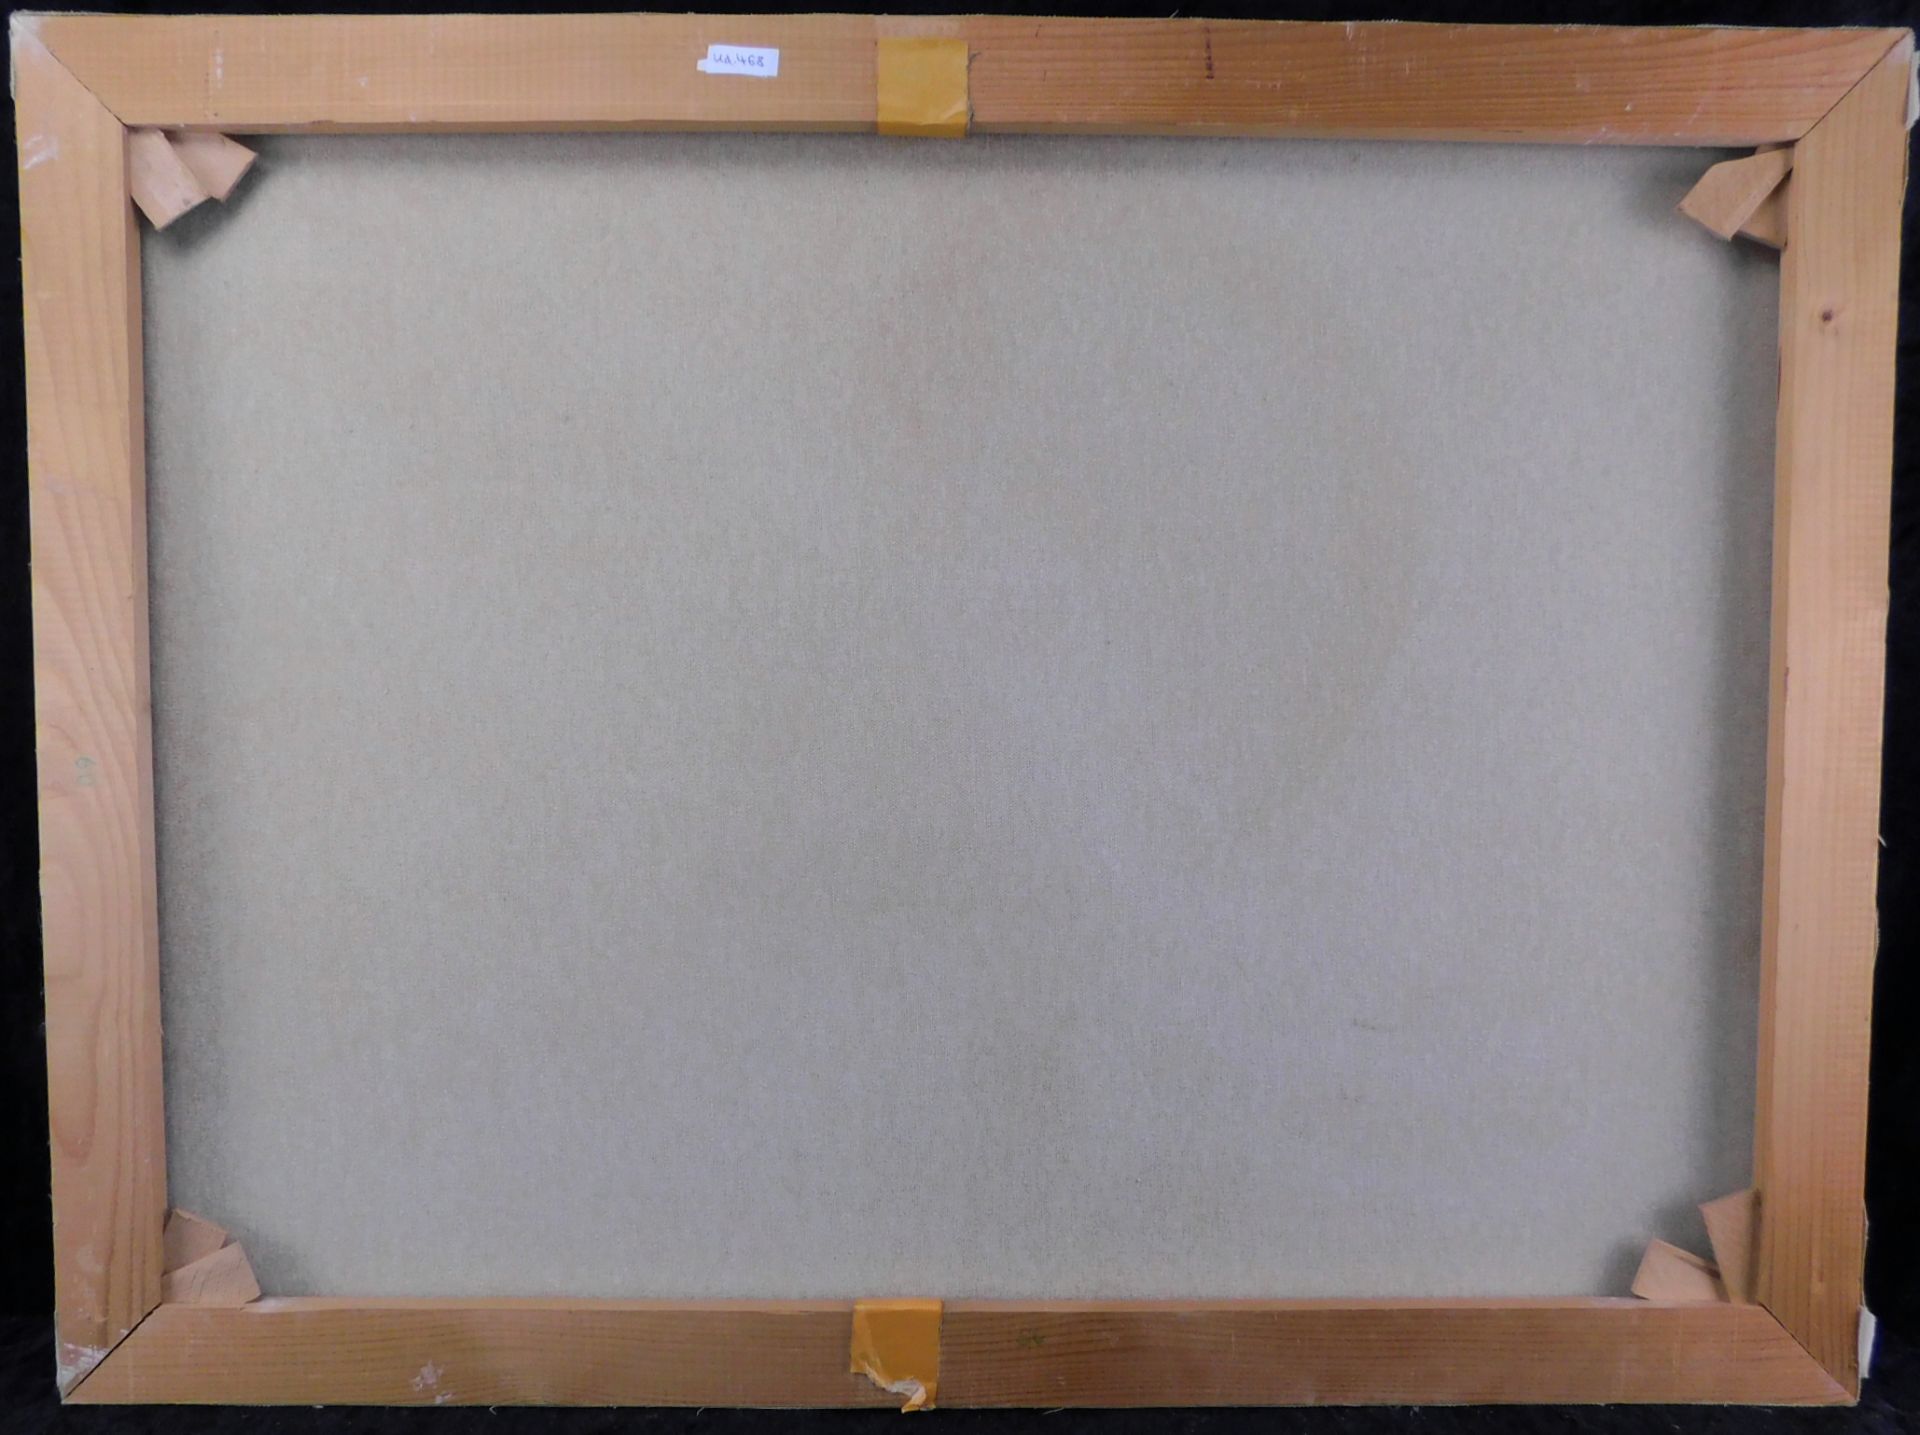 H. Boxbücher, Abstrakte Komposition, Acryl/ Leinwand, sig. u. datiert (19)92, 60 x 80 cm - Bild 3 aus 3